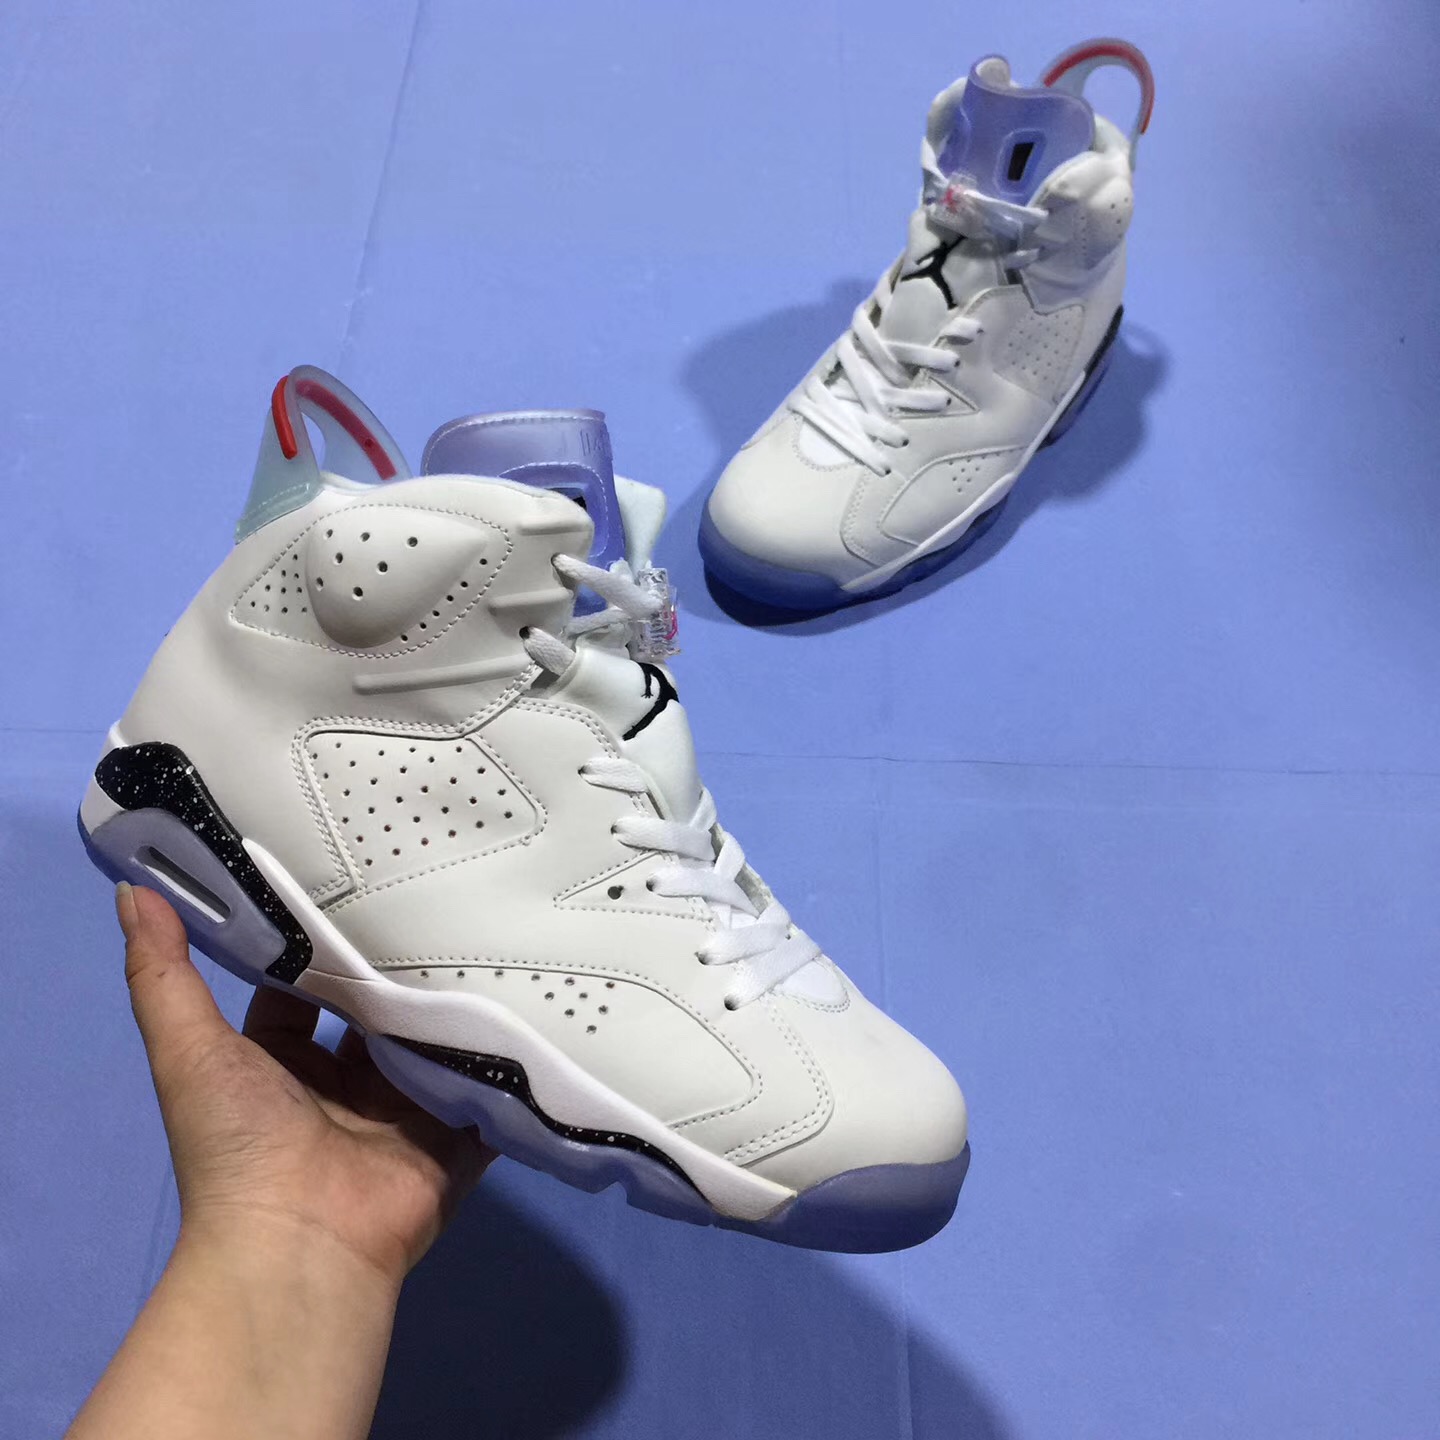 2018 Jordan 6 White Cement Shoes